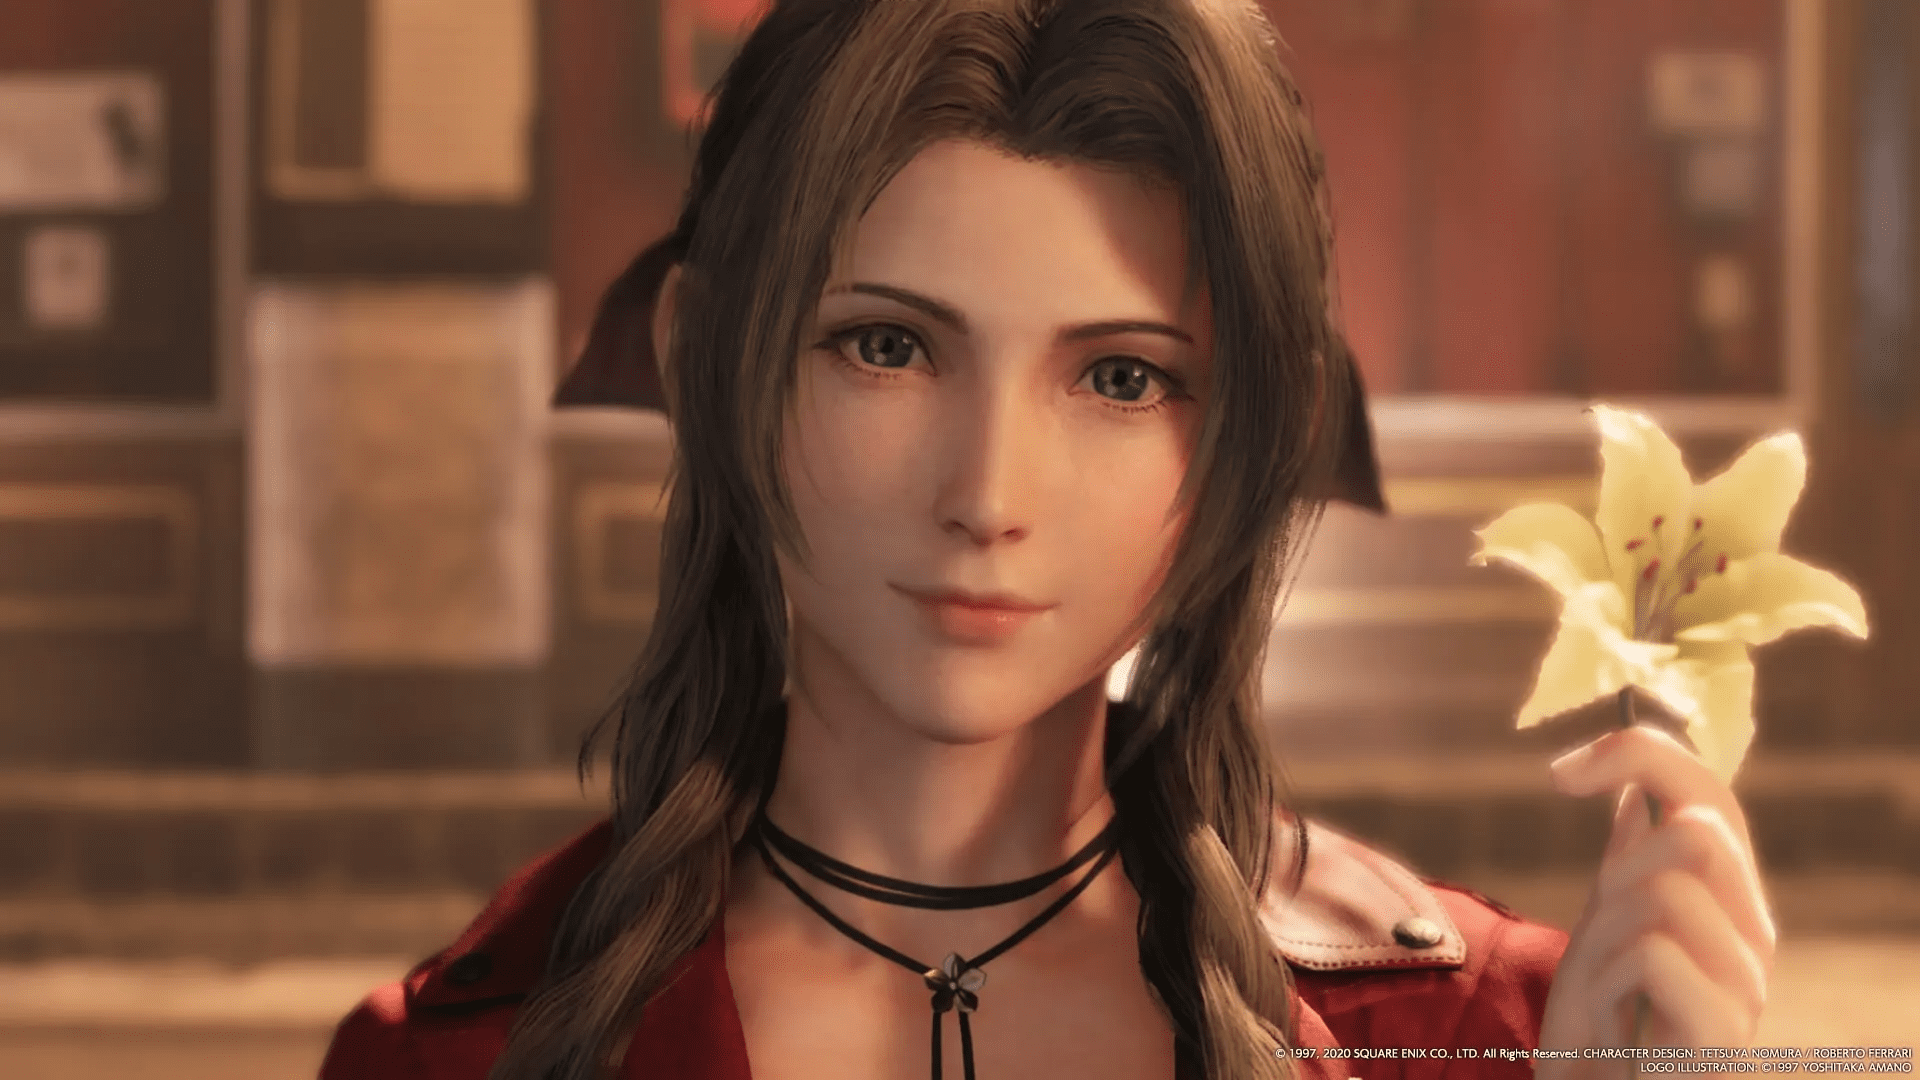 Final Fantasy VII Remake: Square revela detalhes dos personagens